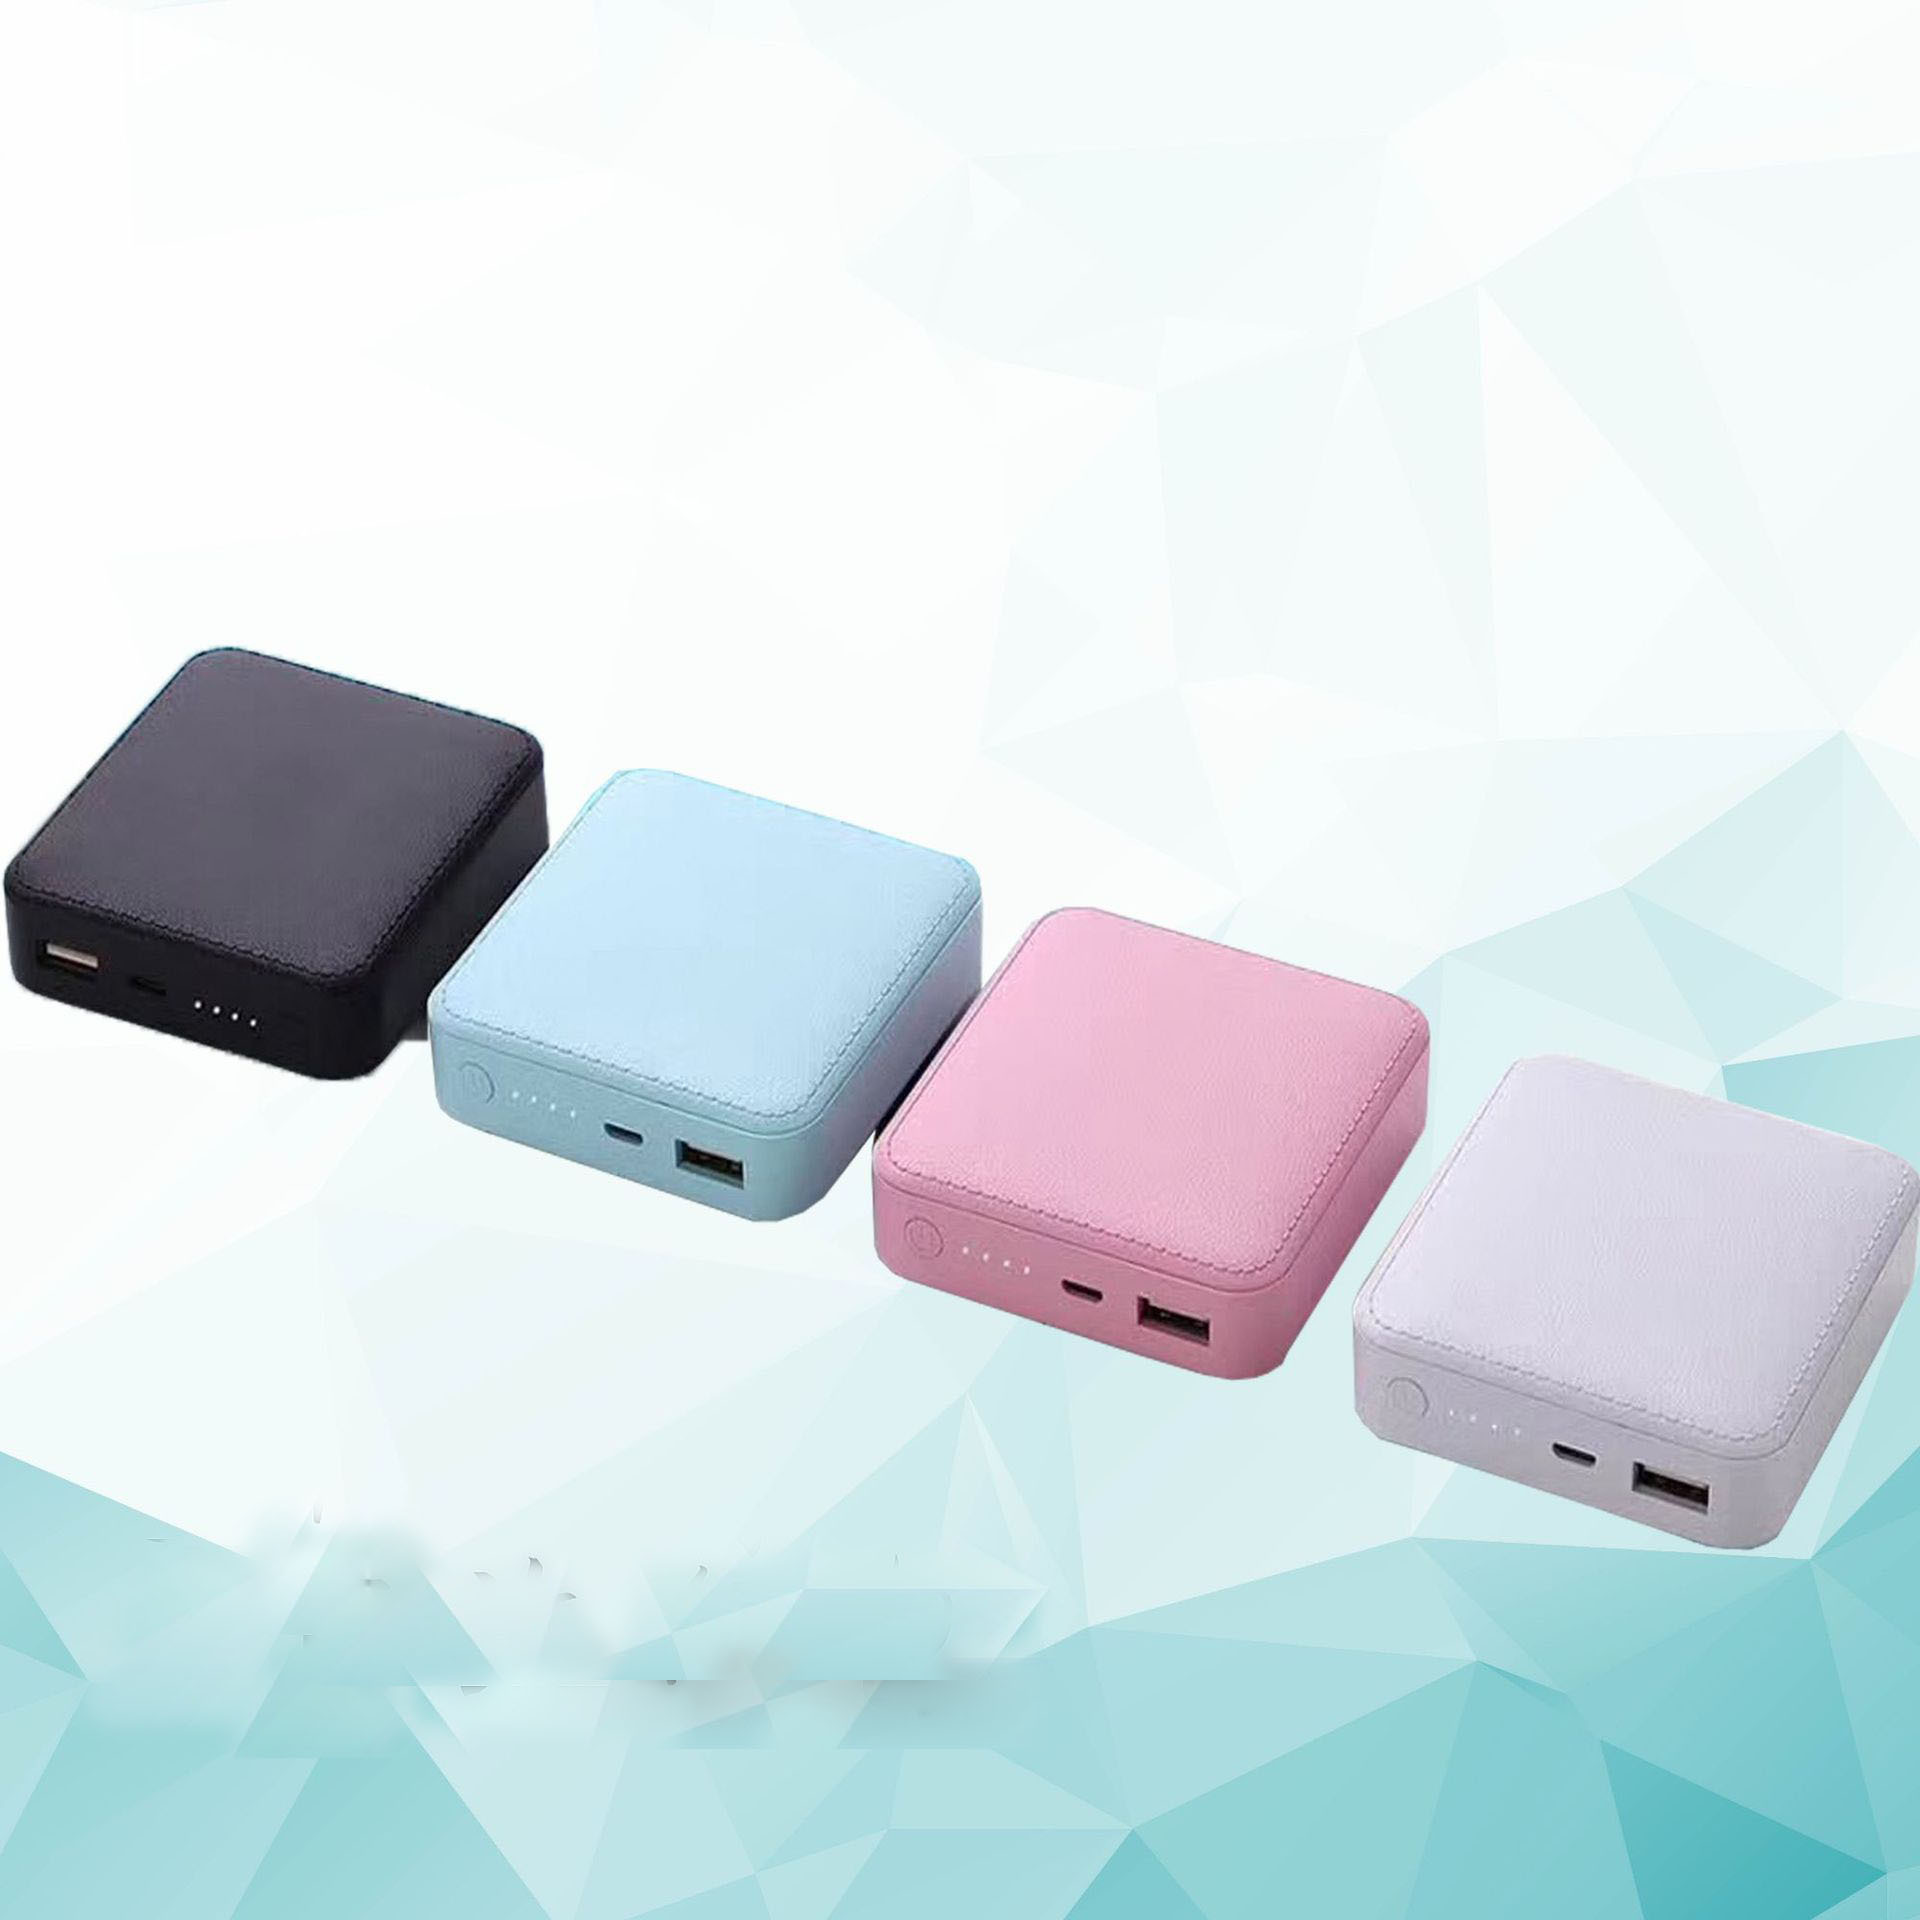 新品创意3节旅行包移动电源10000毫安迷你方块充电宝礼品设计LOGO